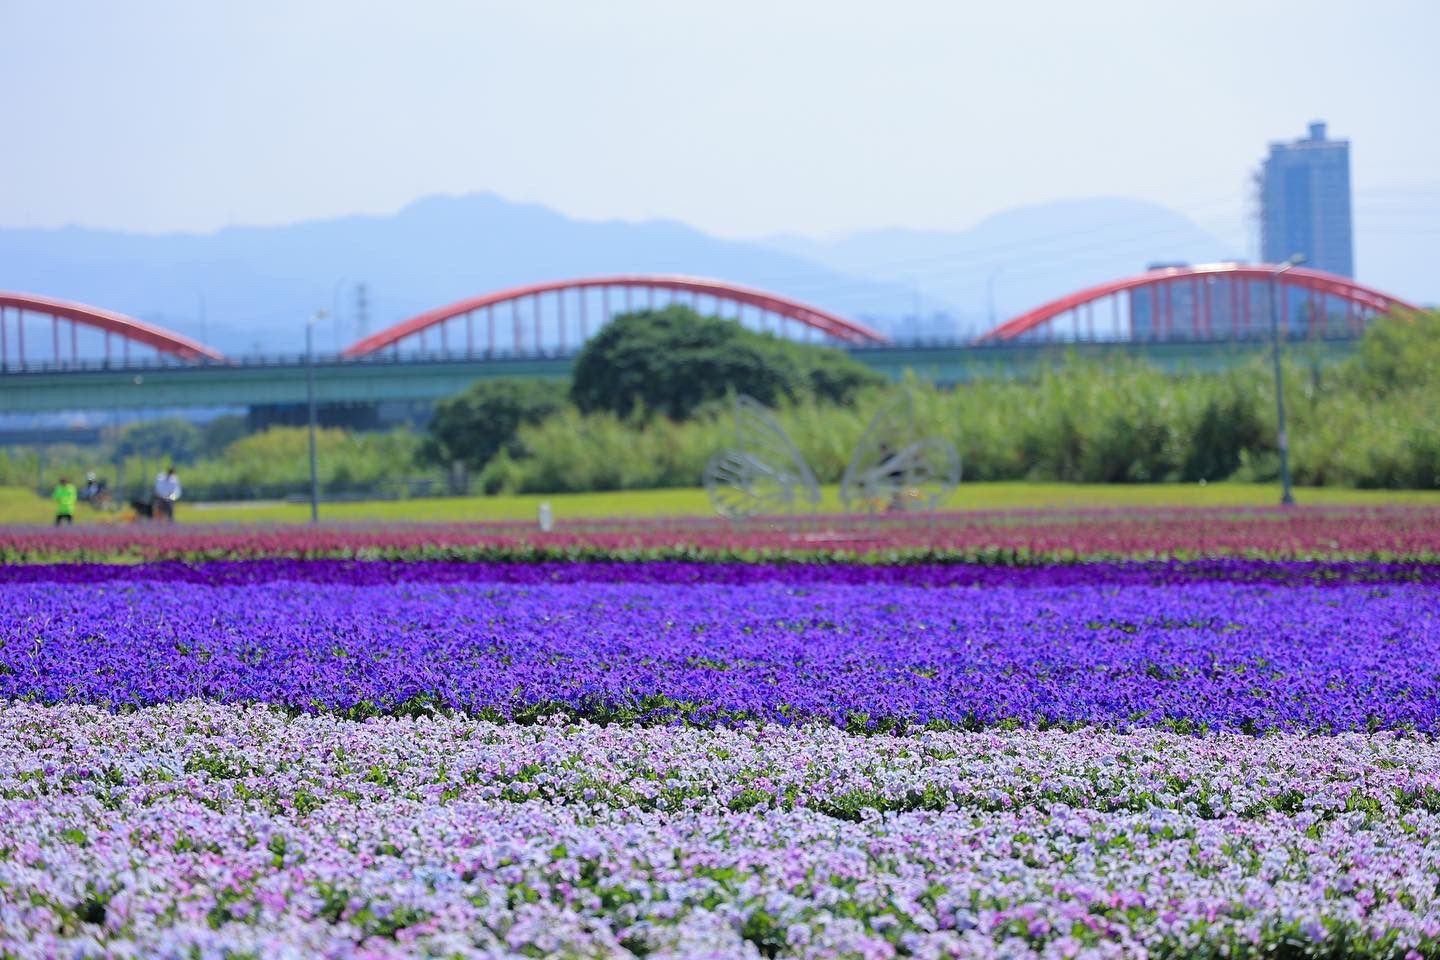 紫色花海浪漫盛開 古亭河濱公園漸層花毯成城市打卡新秘境 Cp值